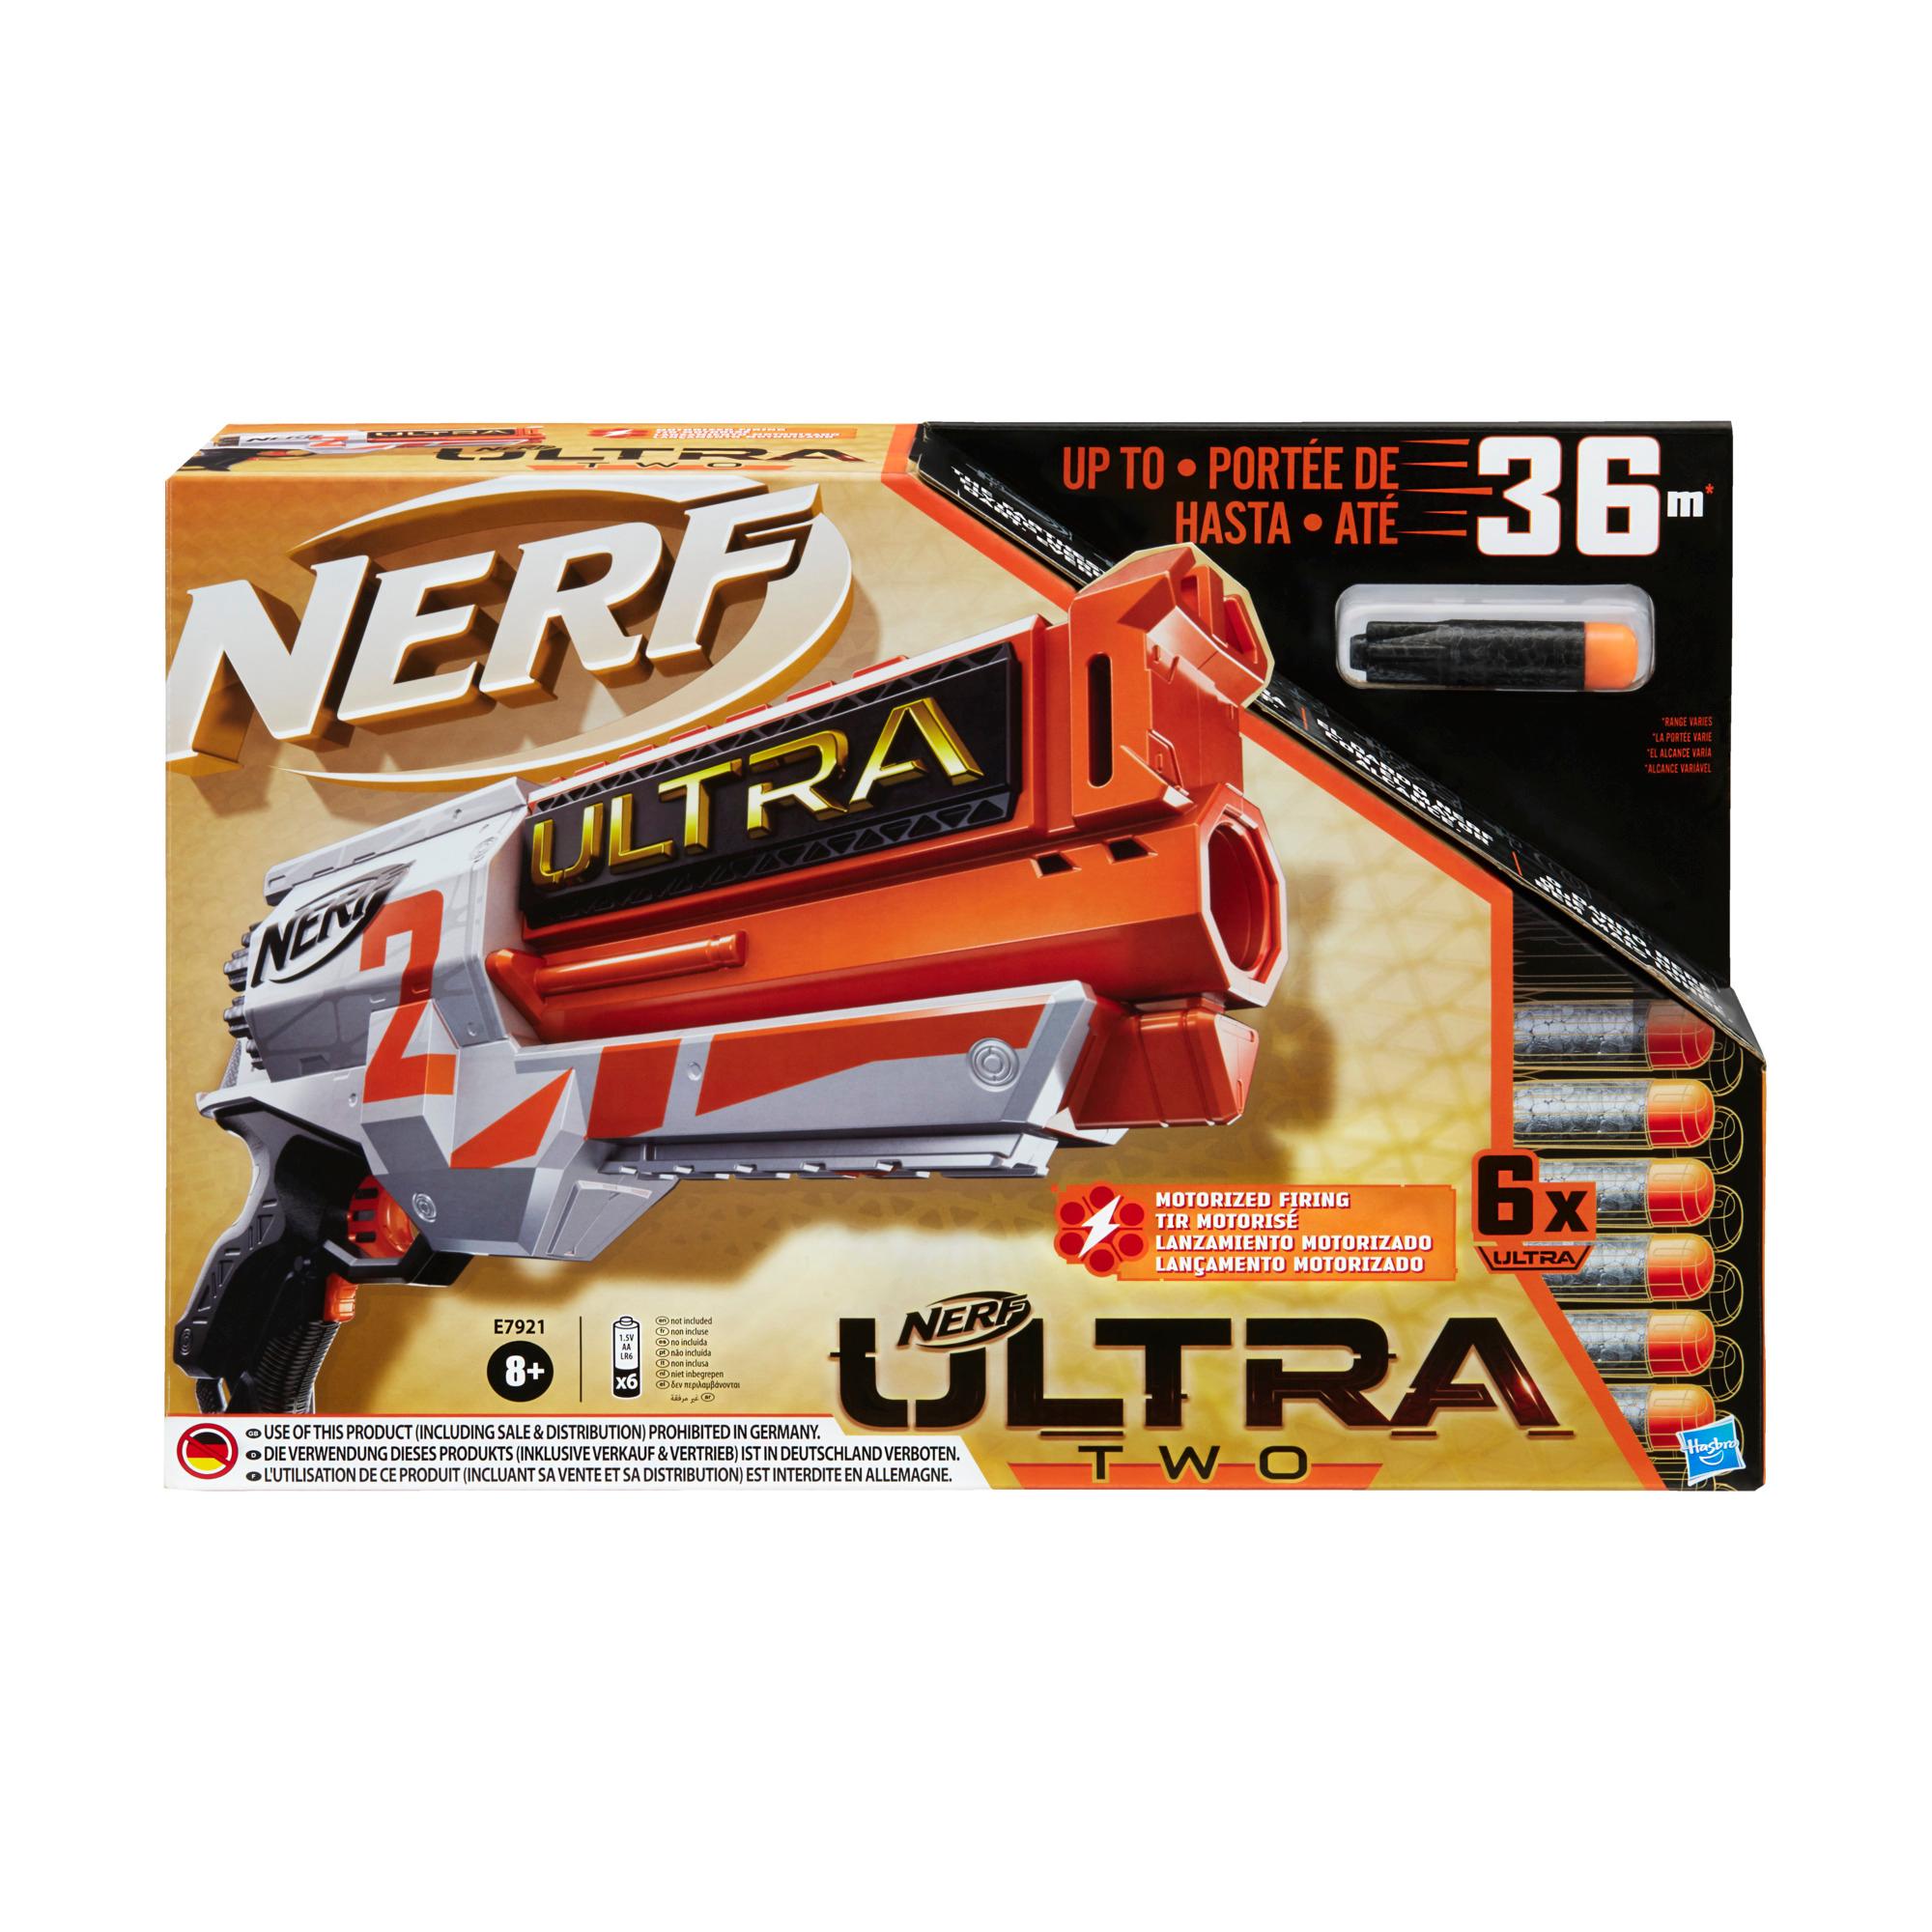 Motoriserad Nerf Ultra Two-blaster – Snabb omladdning, 6 Nerf Ultra-pilar – Endast kompatibel med Nerf Ultra-pilar